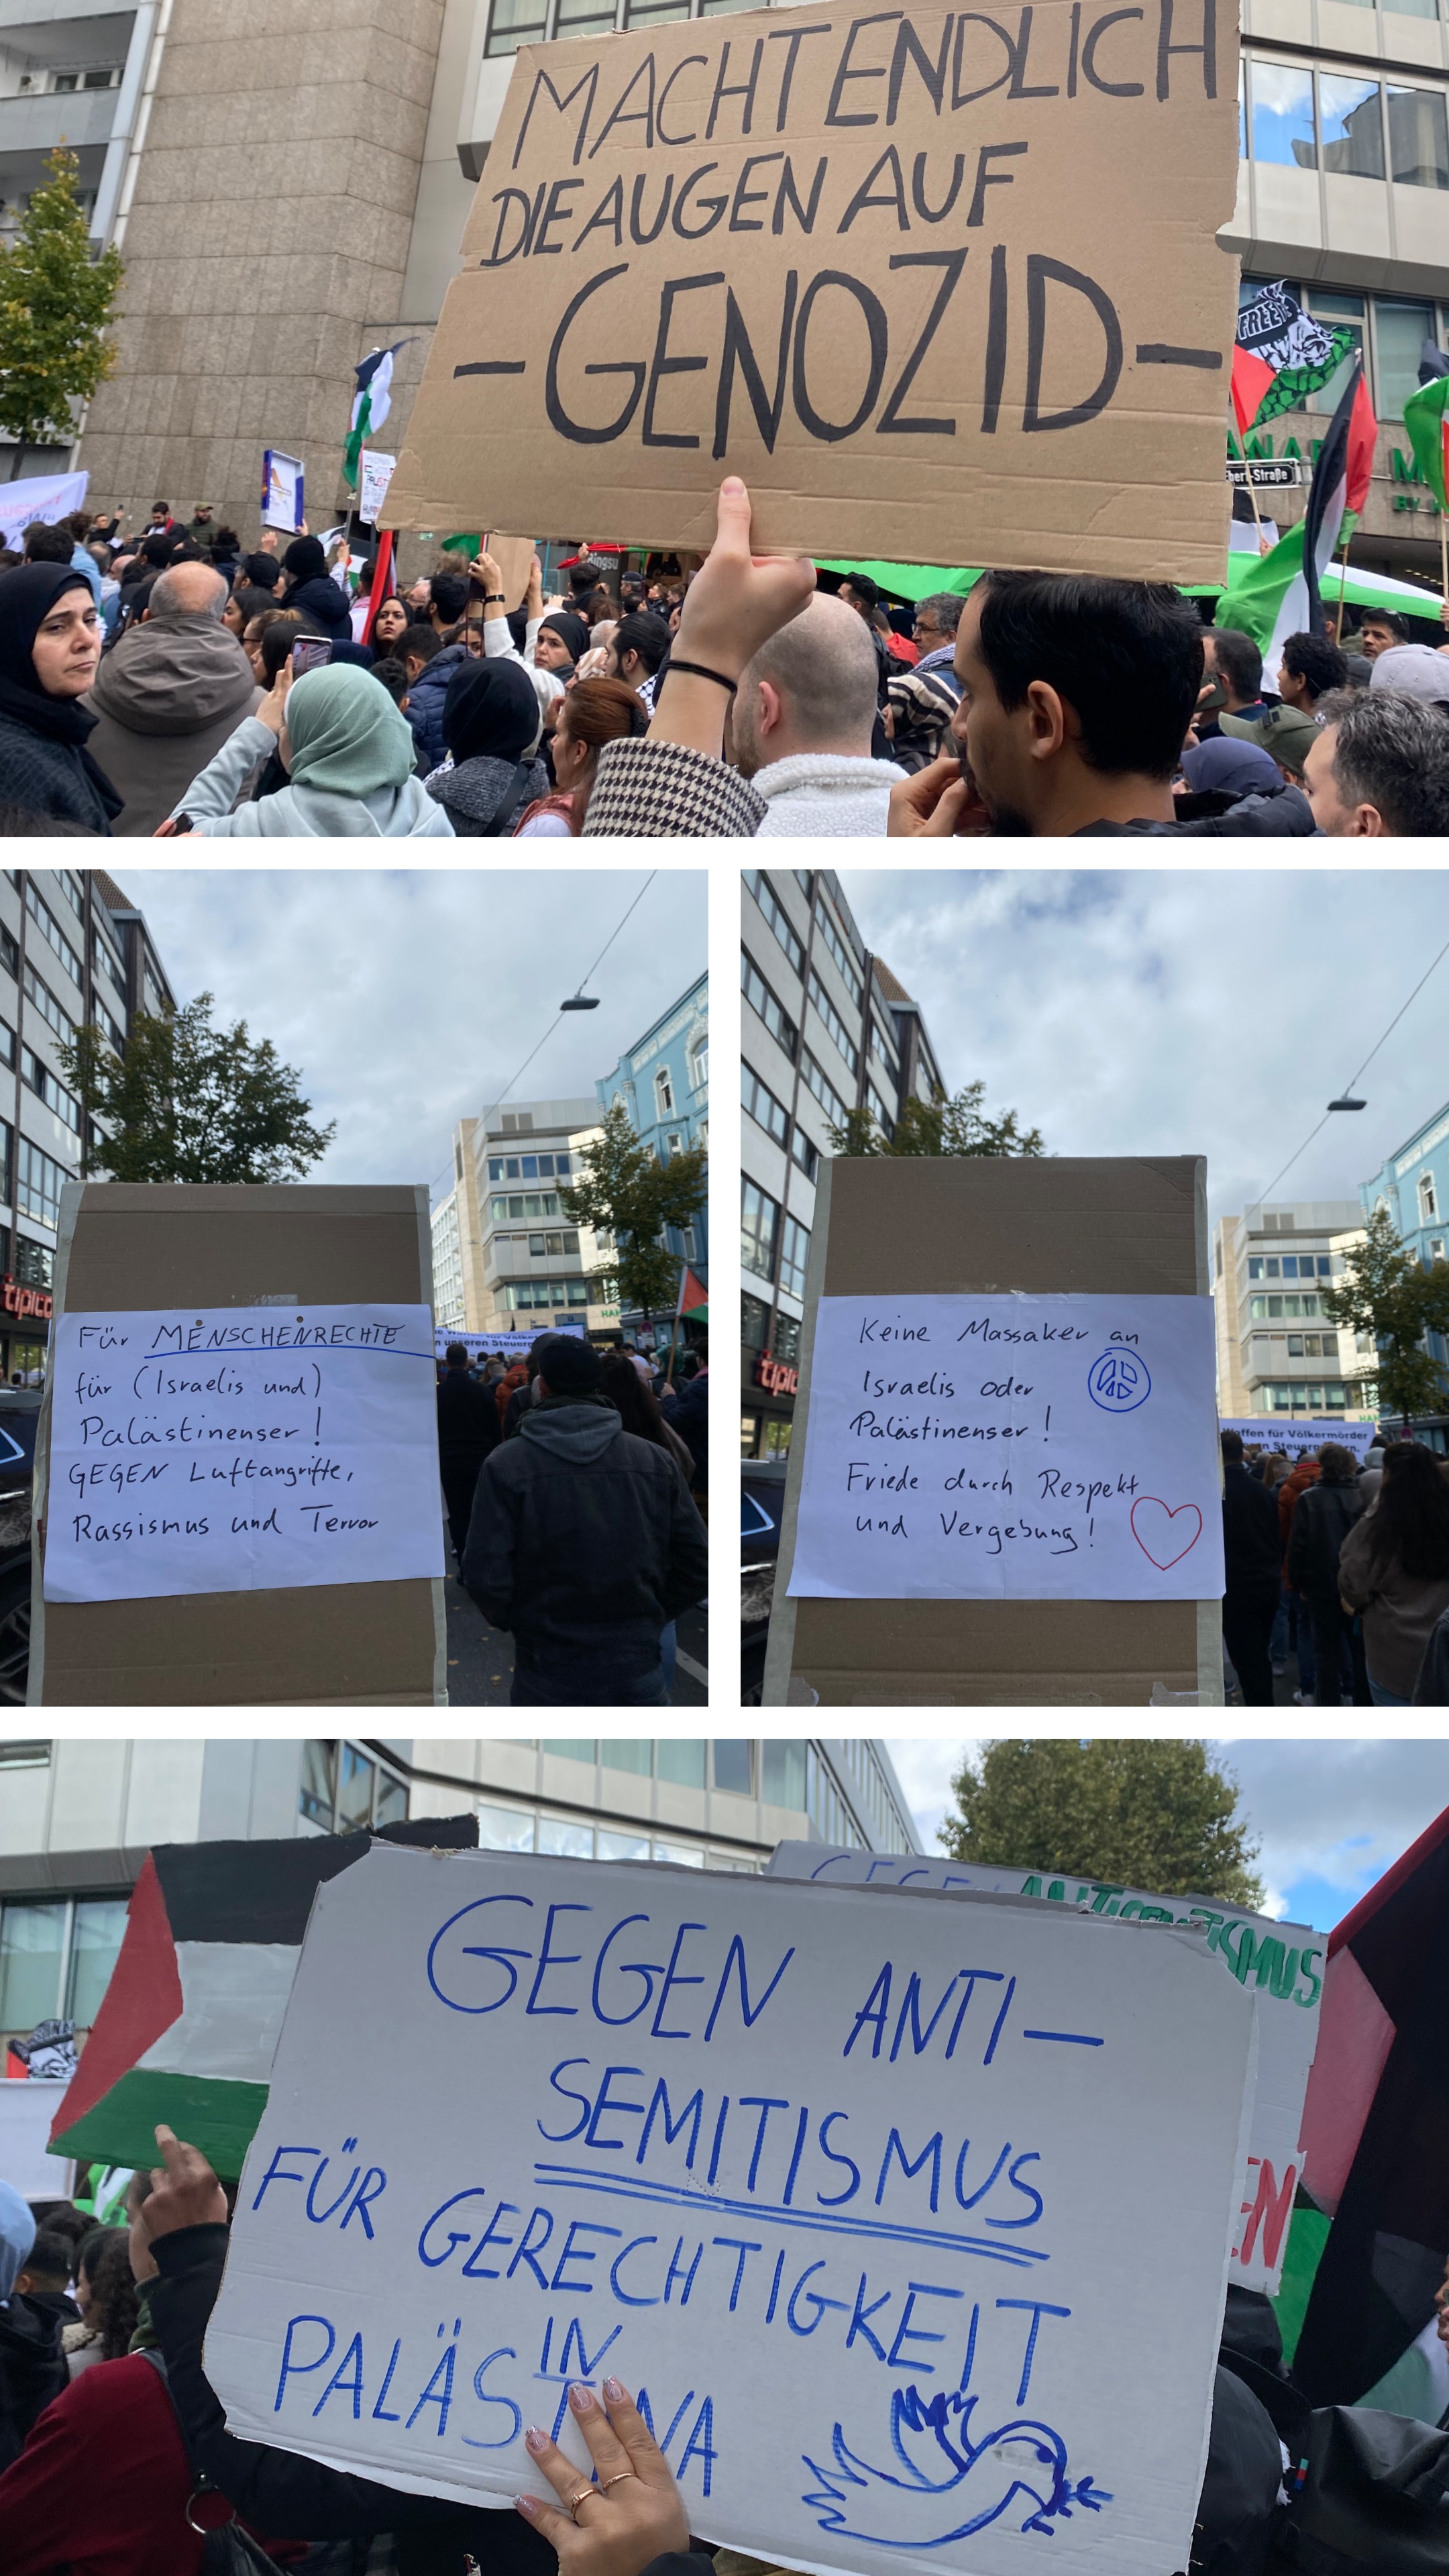 Pro-Palästina-Demo / Foto © Iman Uysal